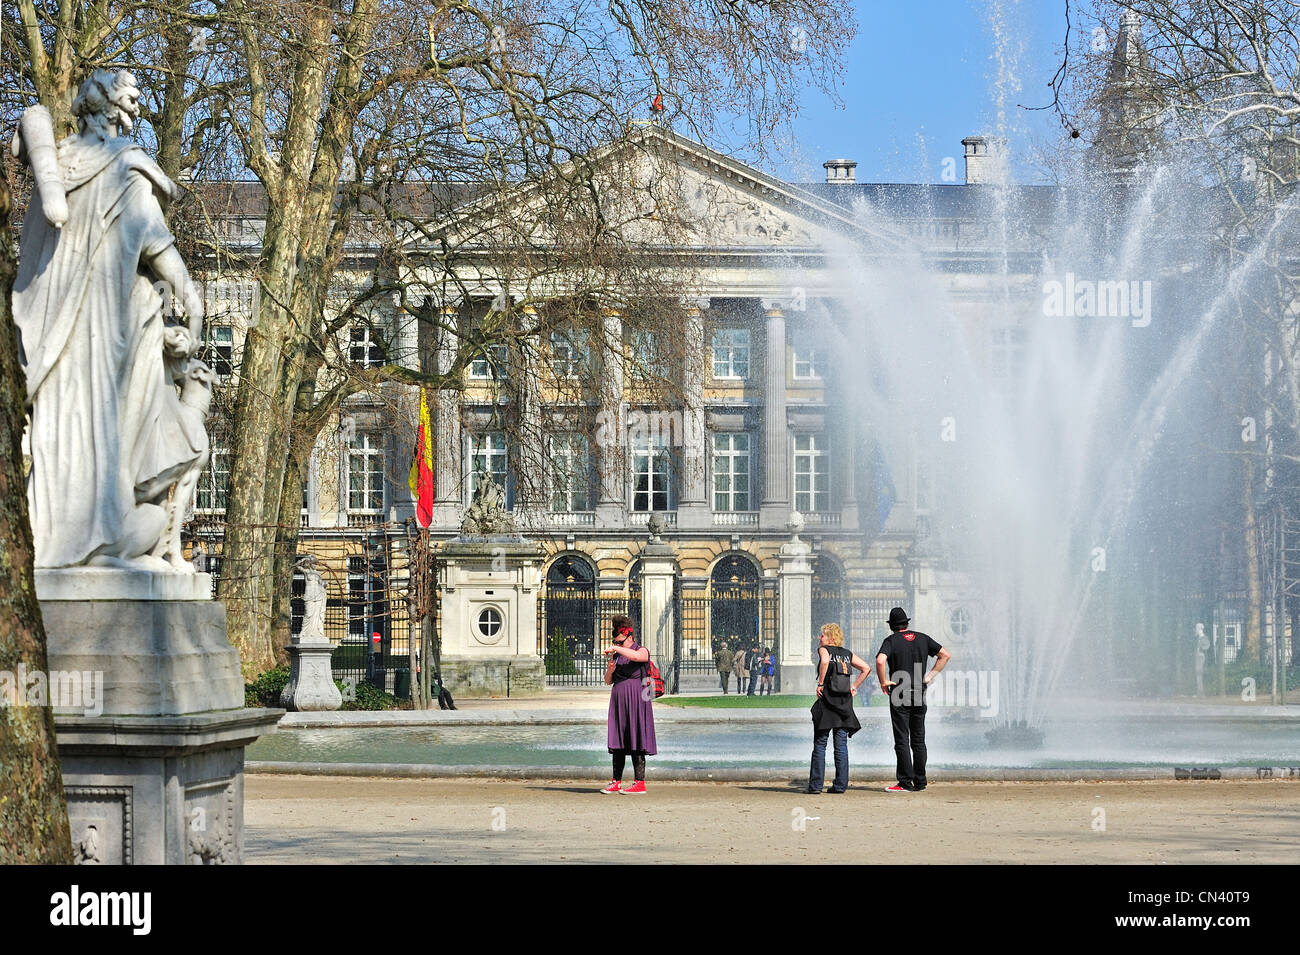 Fontaine au Parc de Bruxelles / Parc de Bruxelles / debout et le Parlement fédéral belge, Bruxelles, Belgique Banque D'Images